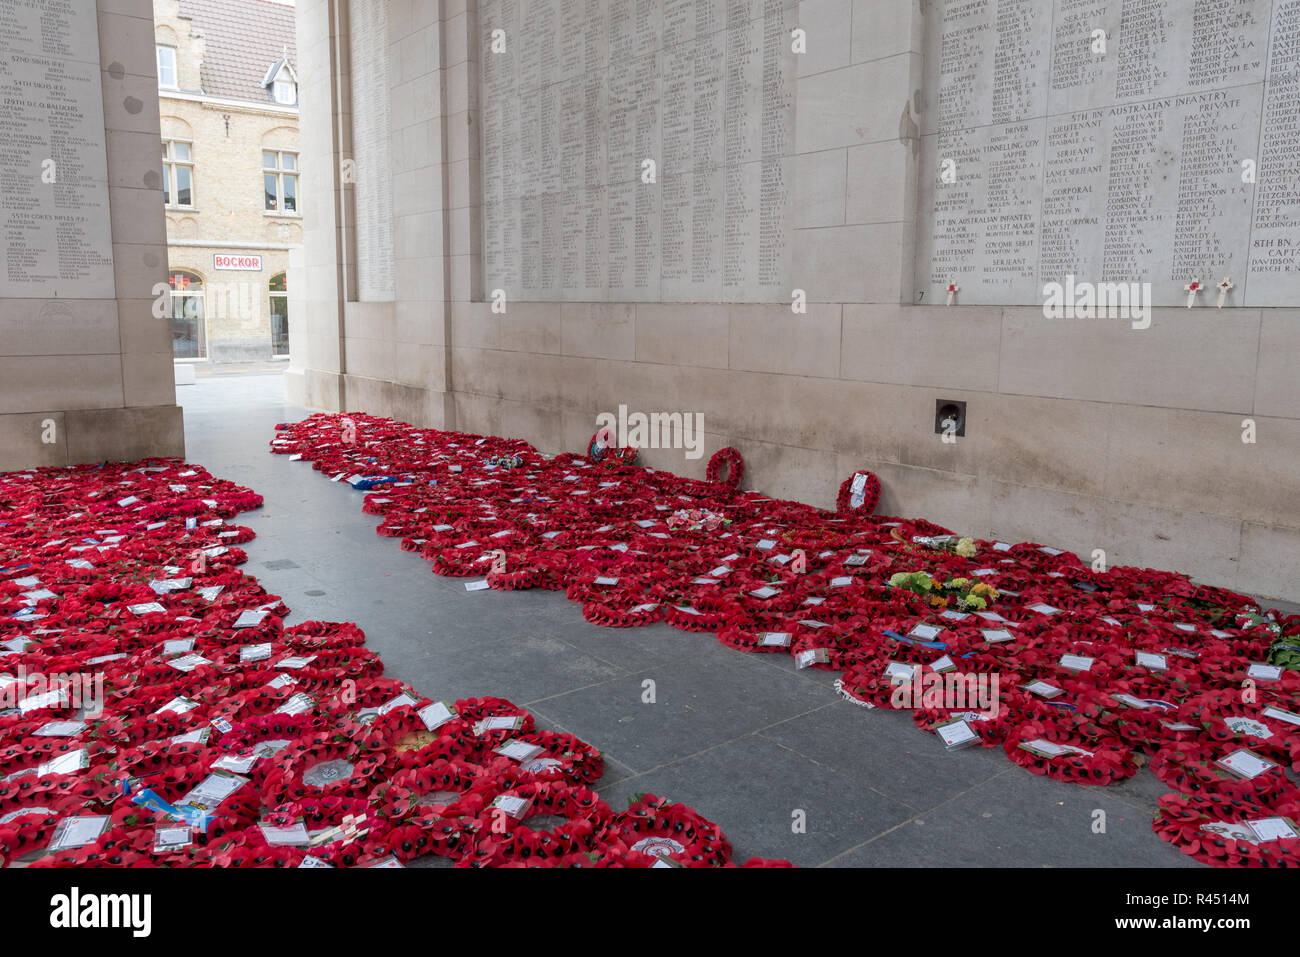 Poppy Kranzniederlegung am Menentor Memorial gelegt, um die Fehlenden der Hundertjahrfeier der Armistice Day, Ypern, Belgien zu markieren Stockfoto